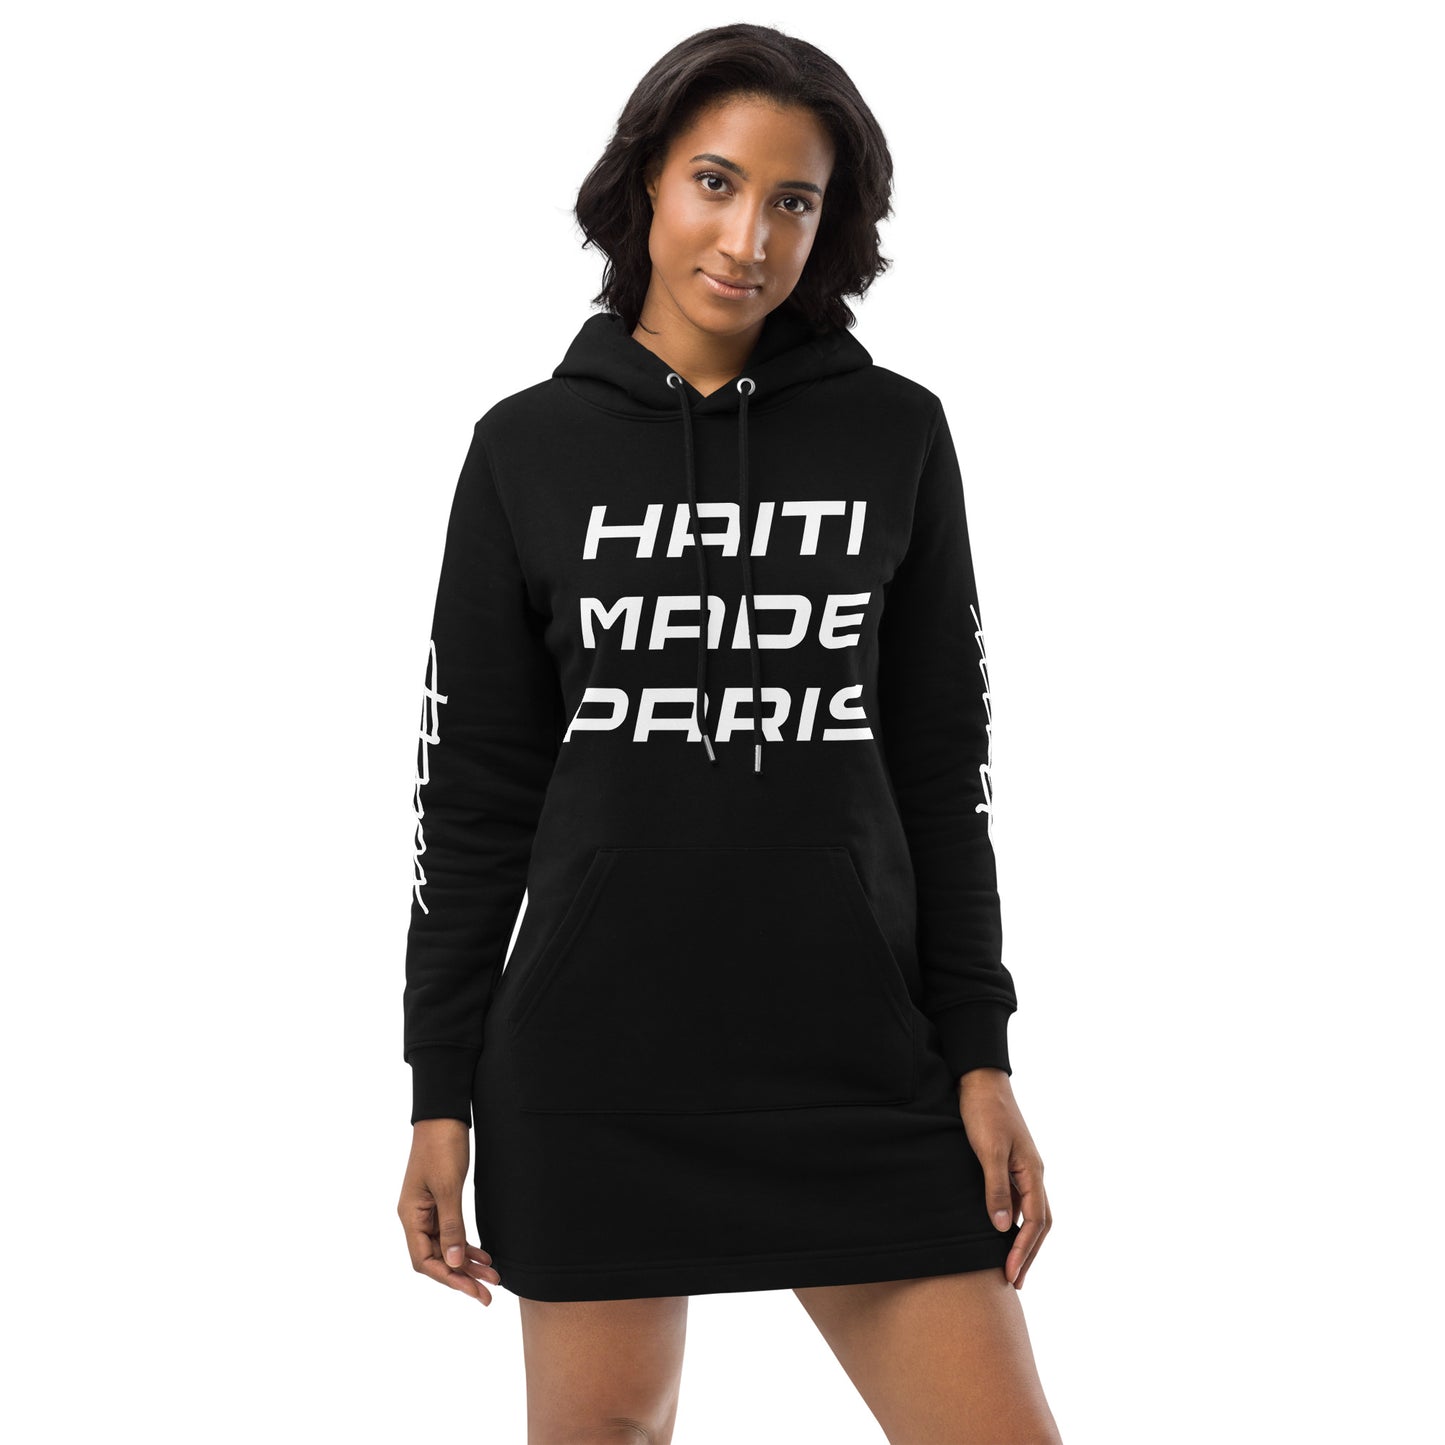 Haiti Made Paris // Jamaica Made London